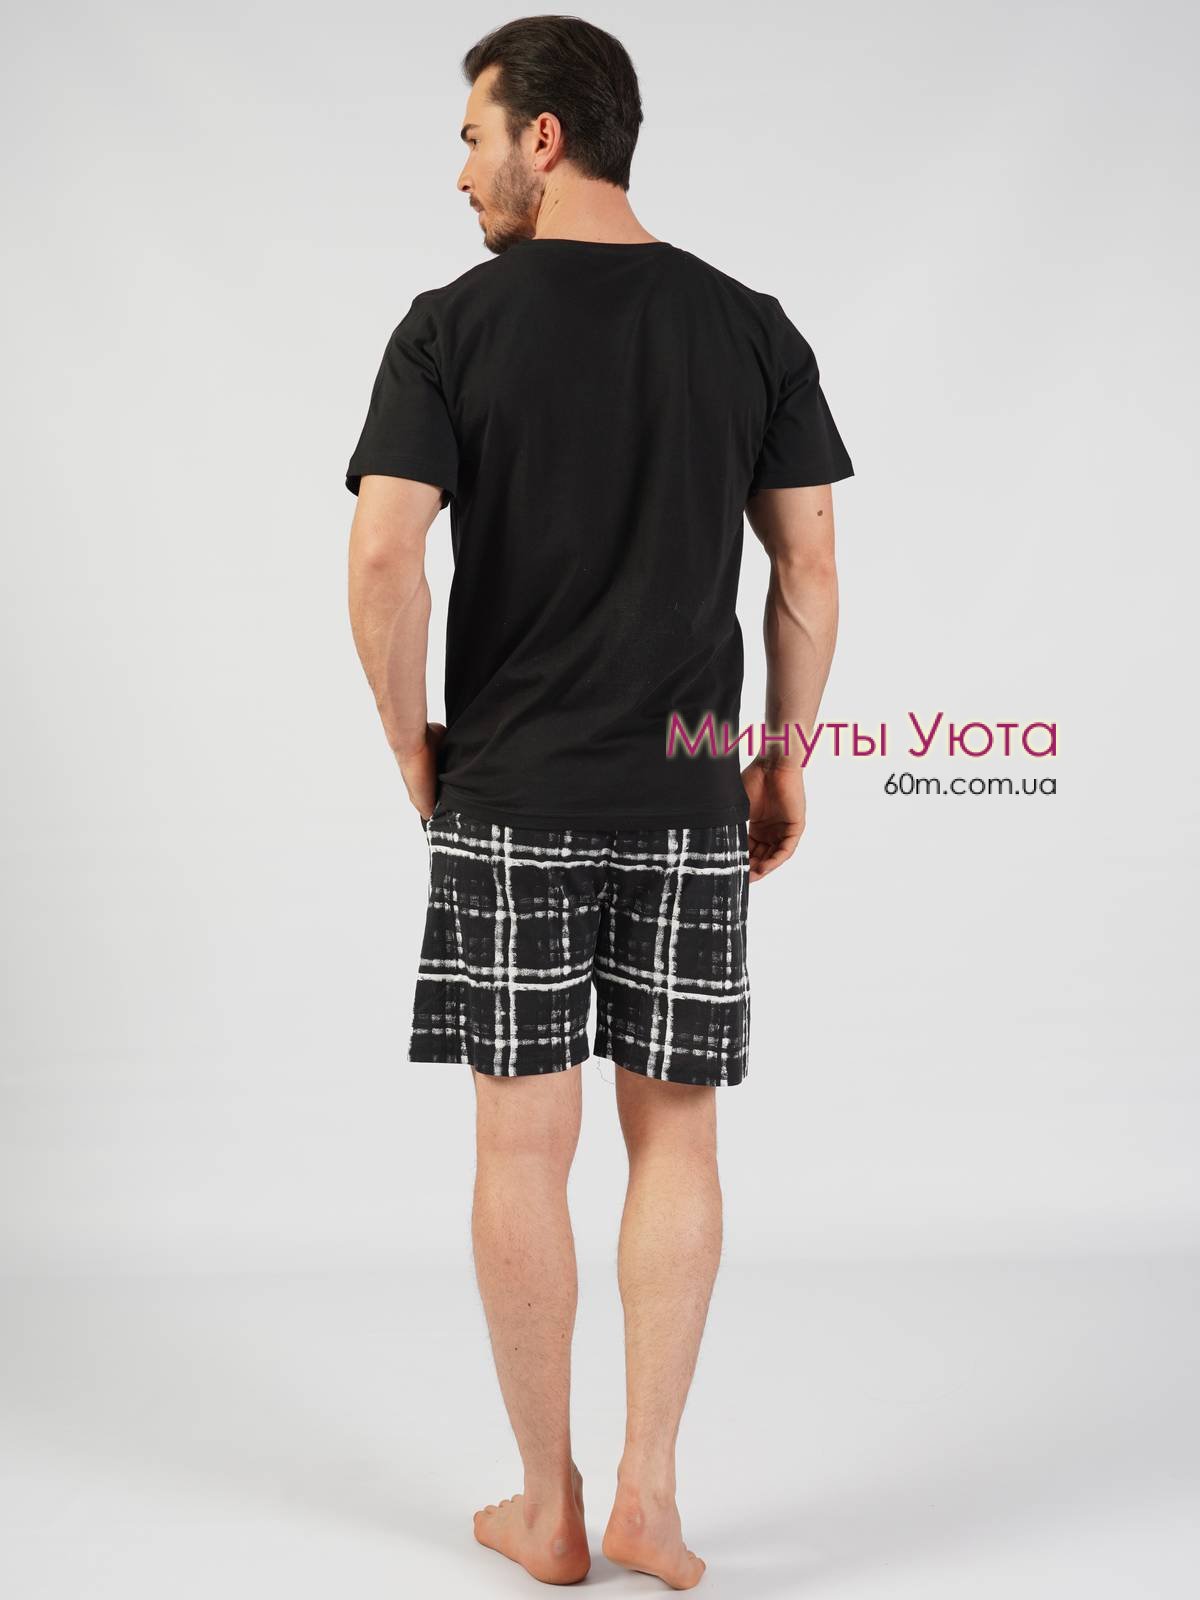 Мужская пижама черного цвета с принтом города на футболке и клетчатыми шортами 